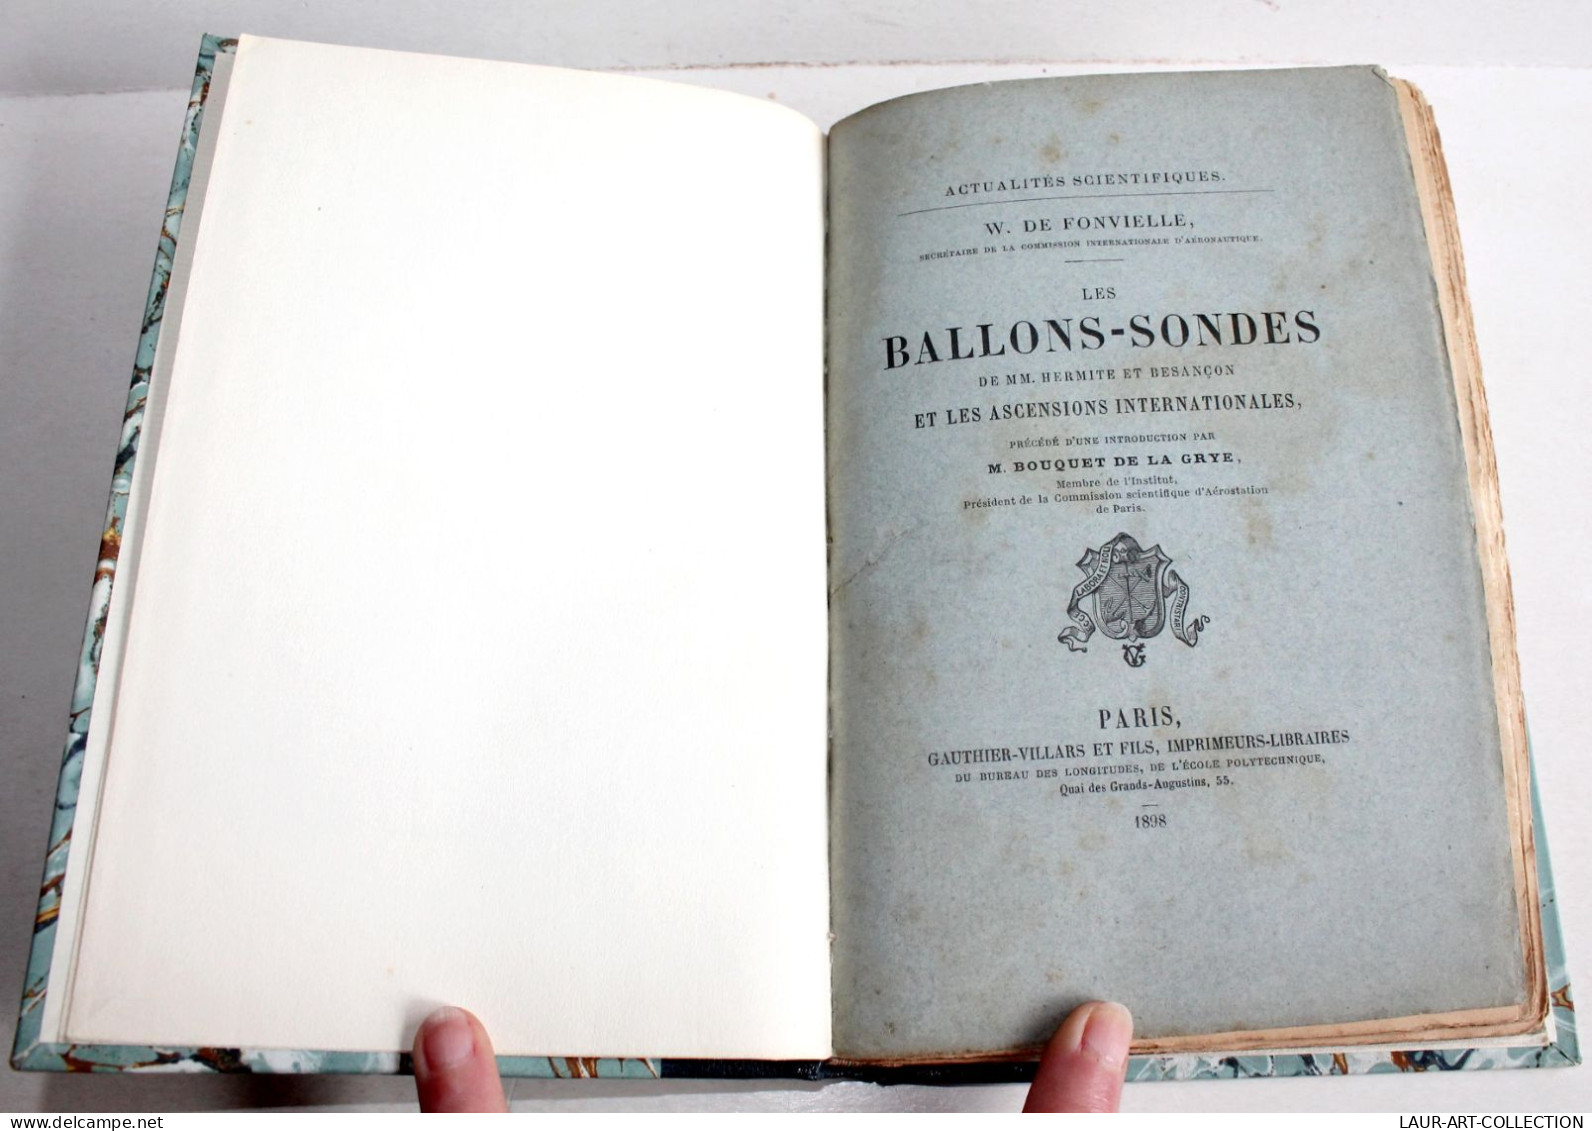 RARE ENVOI D'AUTEUR DE FONVIELLE! LES BALLONS SONDES DE HERMITE ET BESANCON 1898 / ANCIEN LIVRE XIXe SIECLE (2204.33) - Autographed